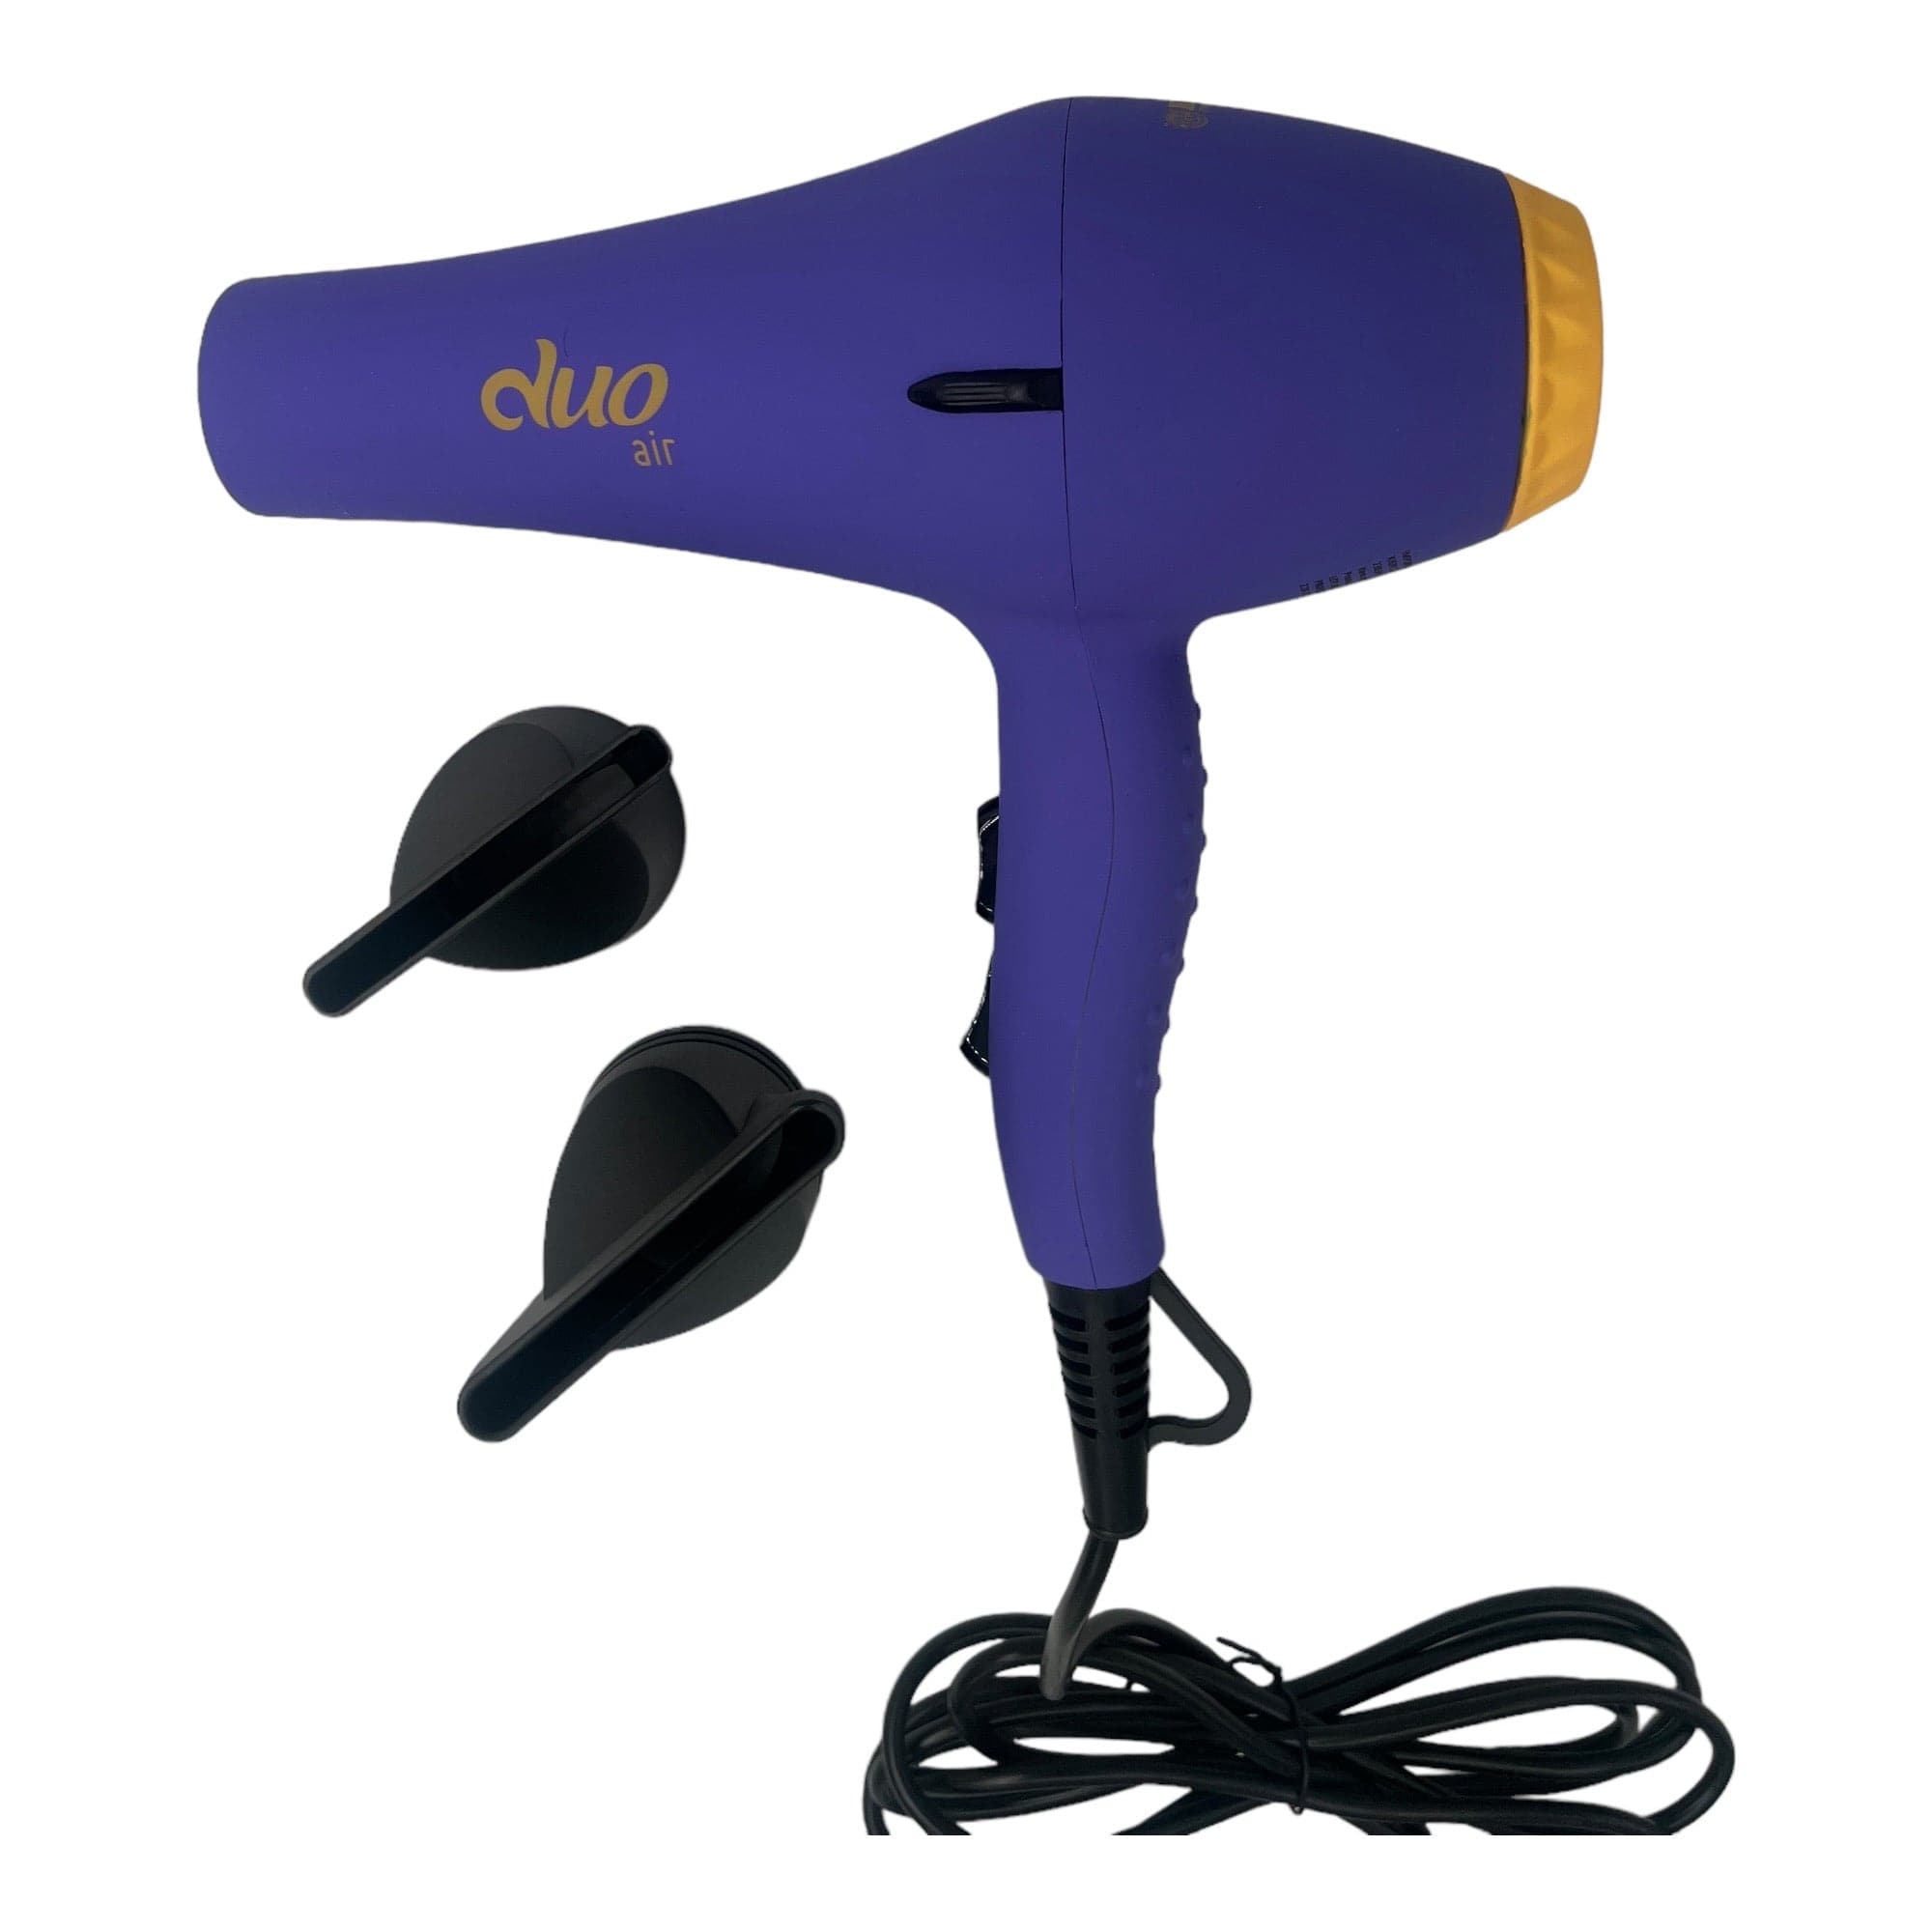 Kiepe -  Dou Air Hair Dryer 2400W Purple-Yellow